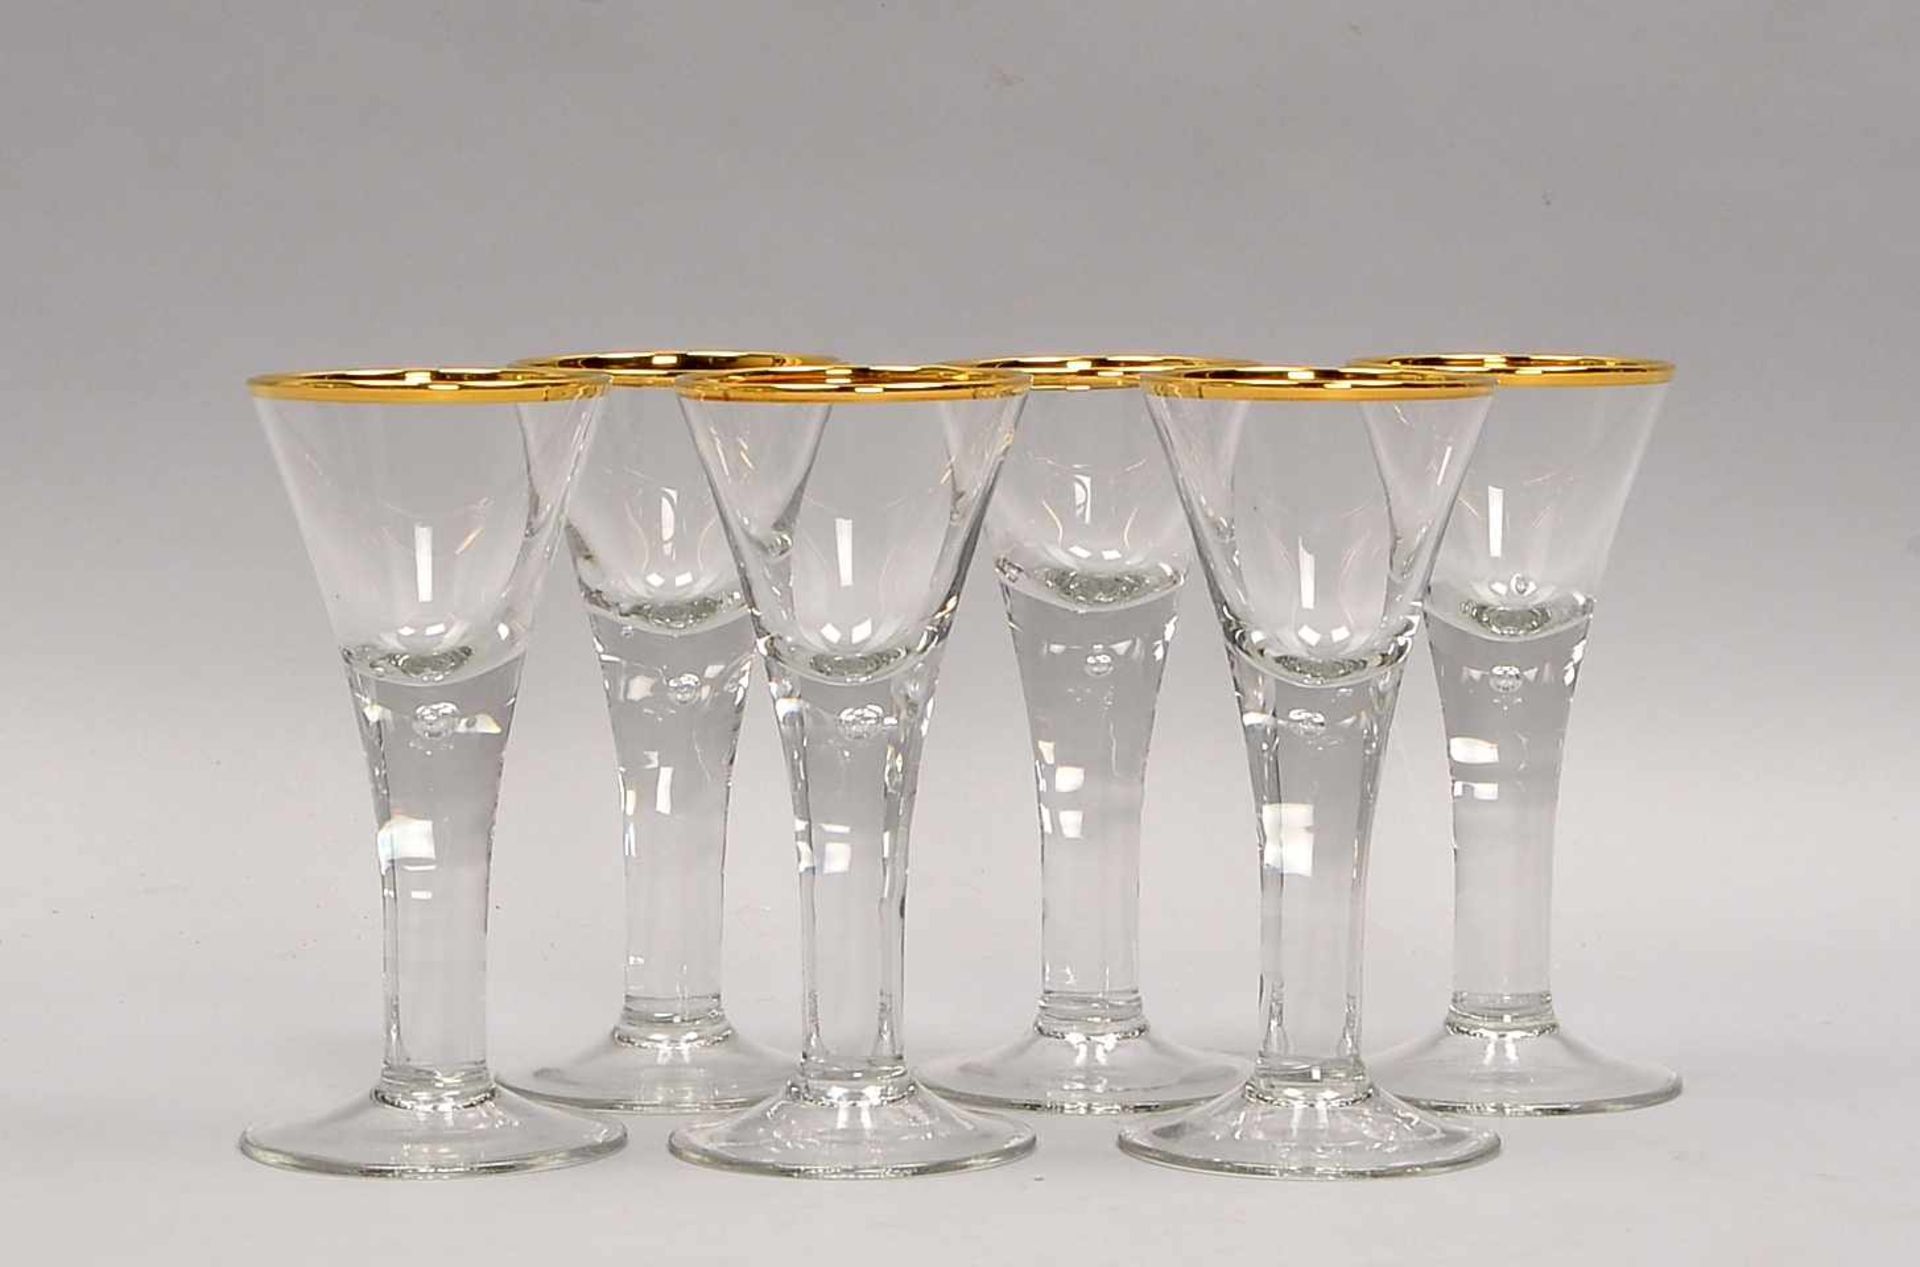 Satz Martini-Gläser, barocke Form/in Lauensteiner Manier, mit eingestochenen Luftblasen und